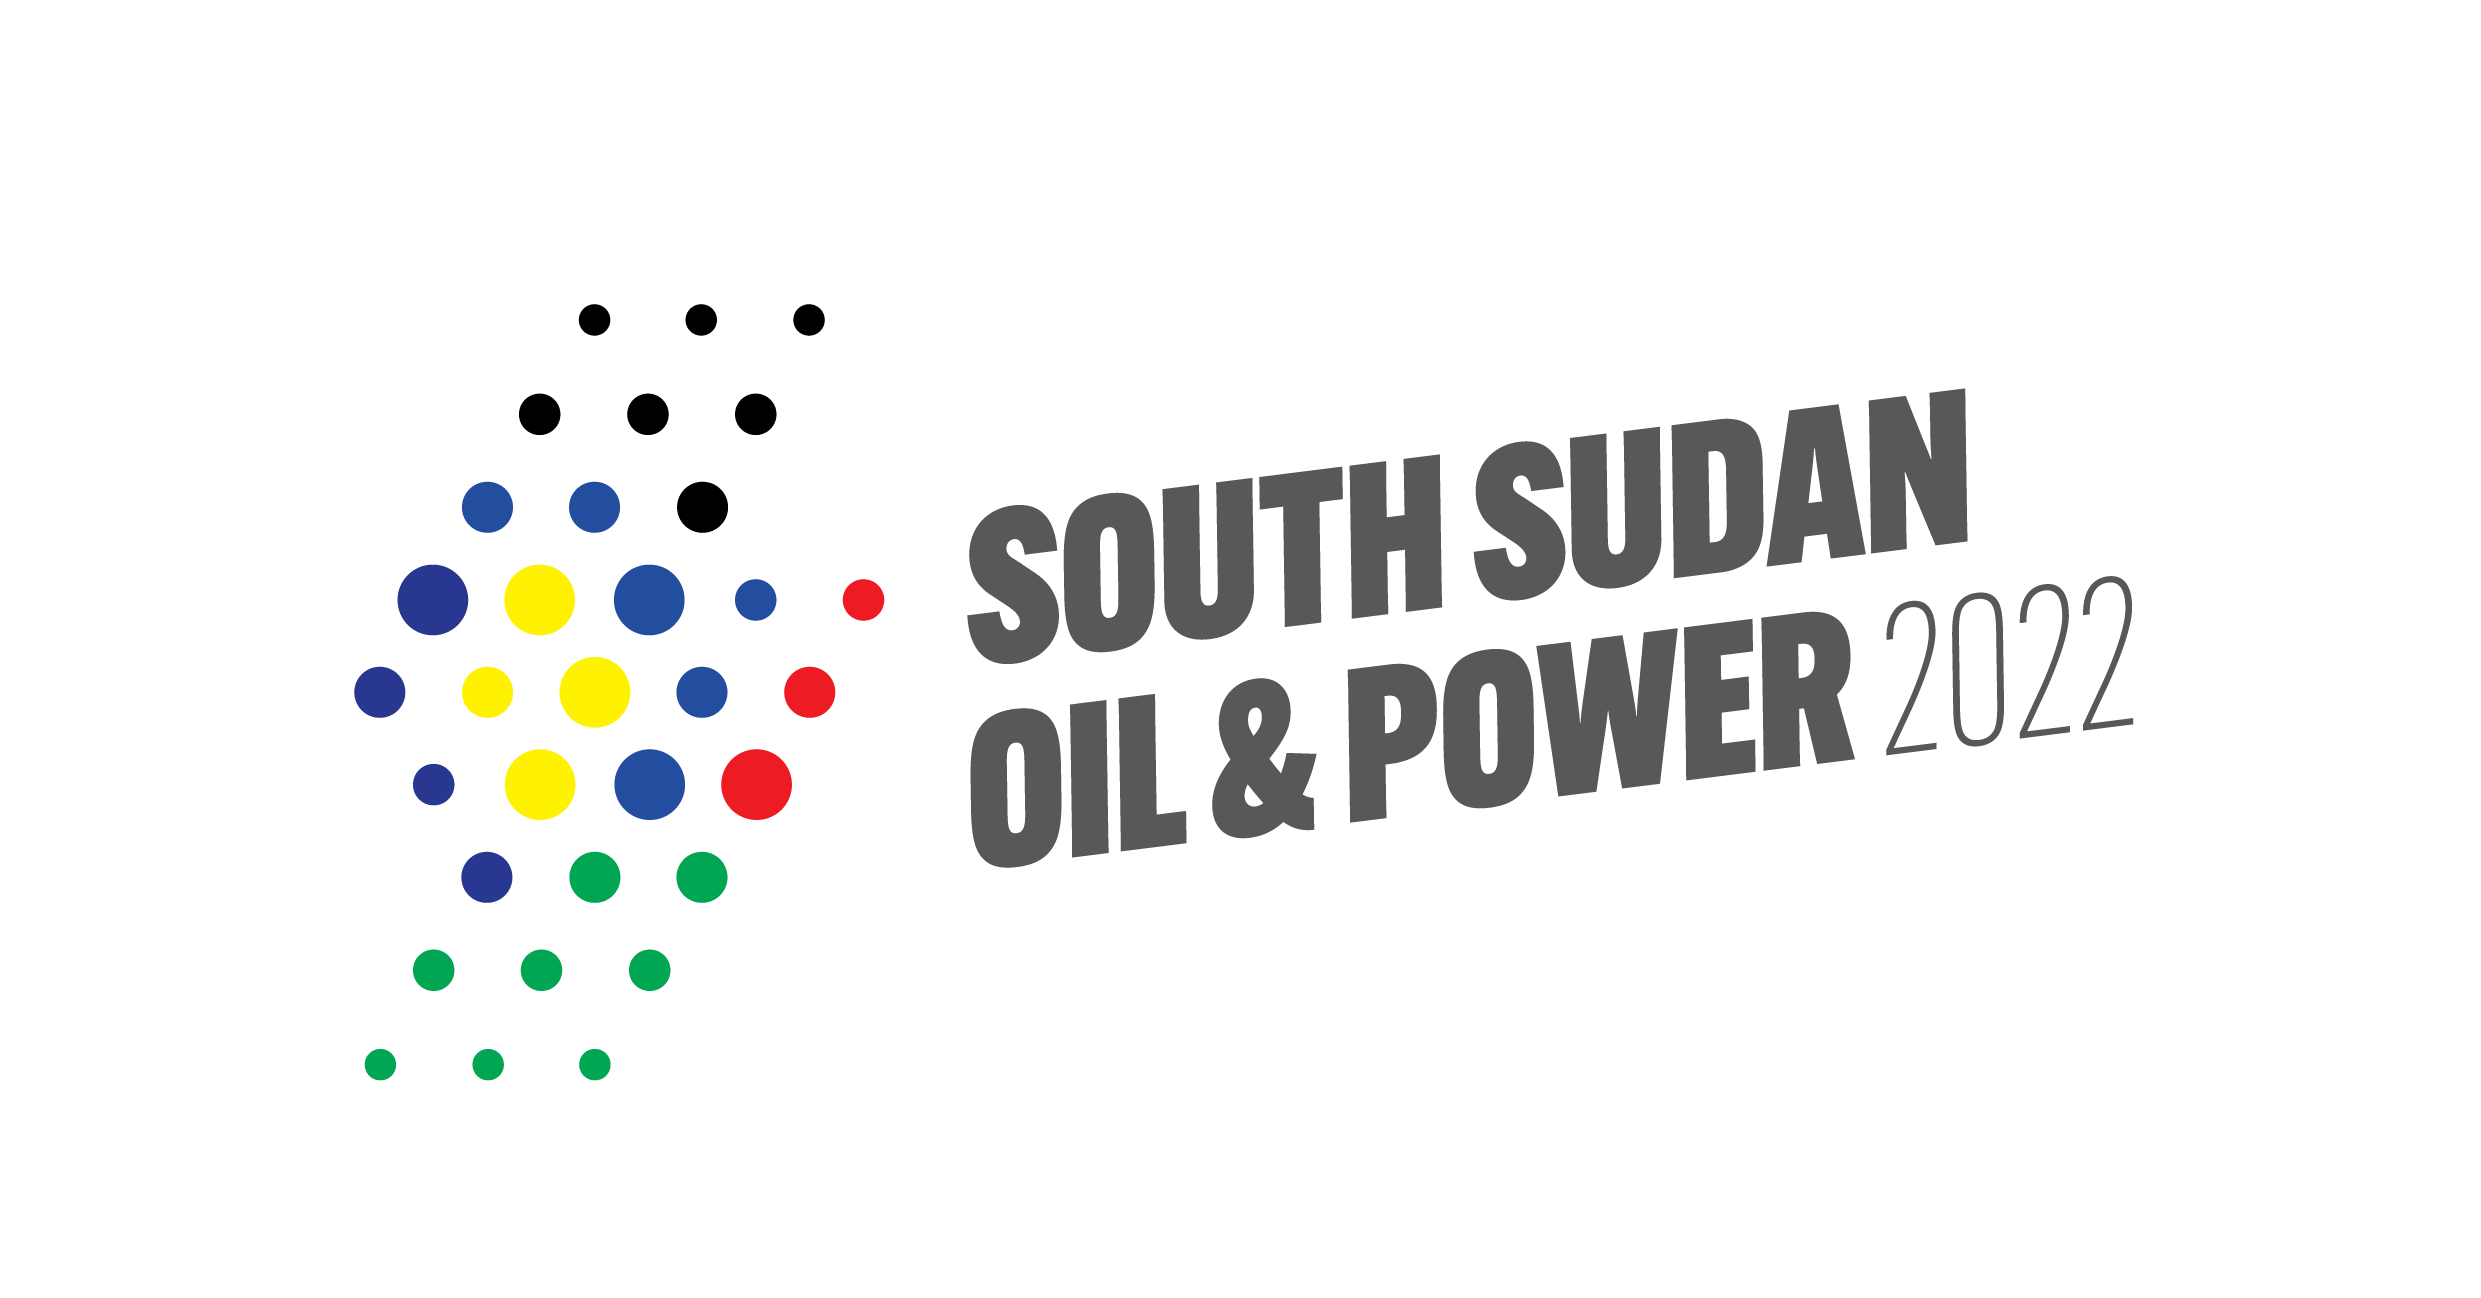 Çin, Kanada, Mısır, Türkiye ve diğerleri: Güney Sudan Enerji Zirvesi küresel delegasyonları ağırlıyor